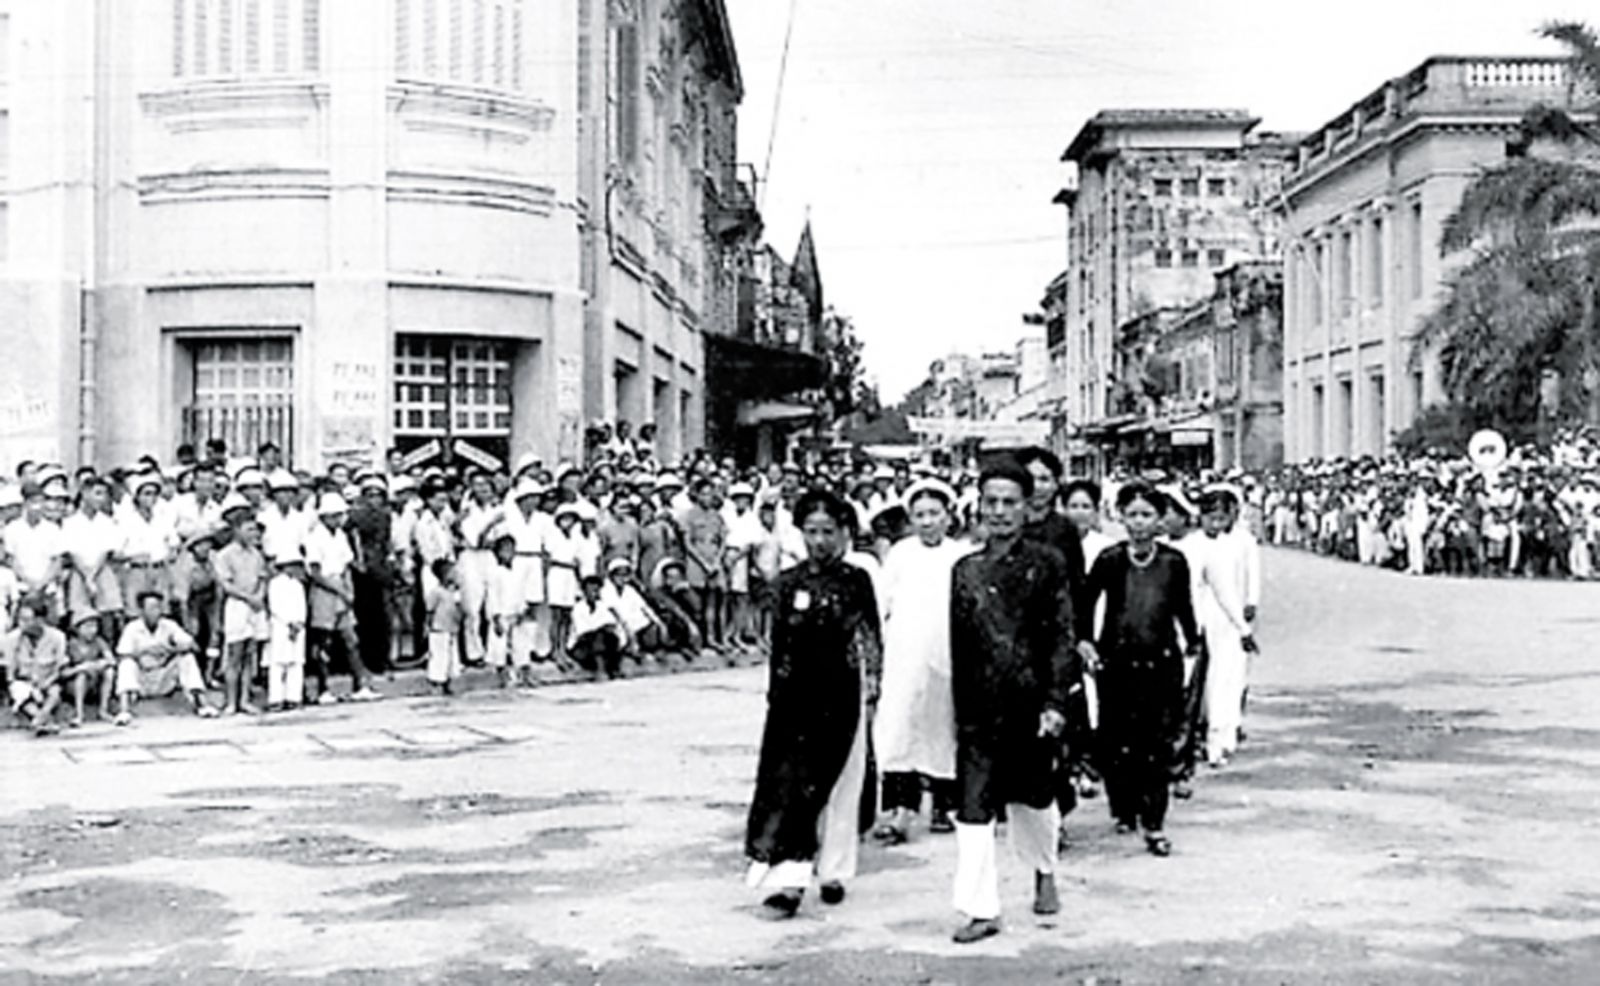  Gia đình cụ Trịnh Văn Bô đã ủng hộ cách mạng 5.147 lượng vàng.p/(Đoàn công thương tham gia “Tuần lễ vàng” tổ chức tại Nhà hát Lớn Hà Nội năm 1945. Ảnh: tư liệu)